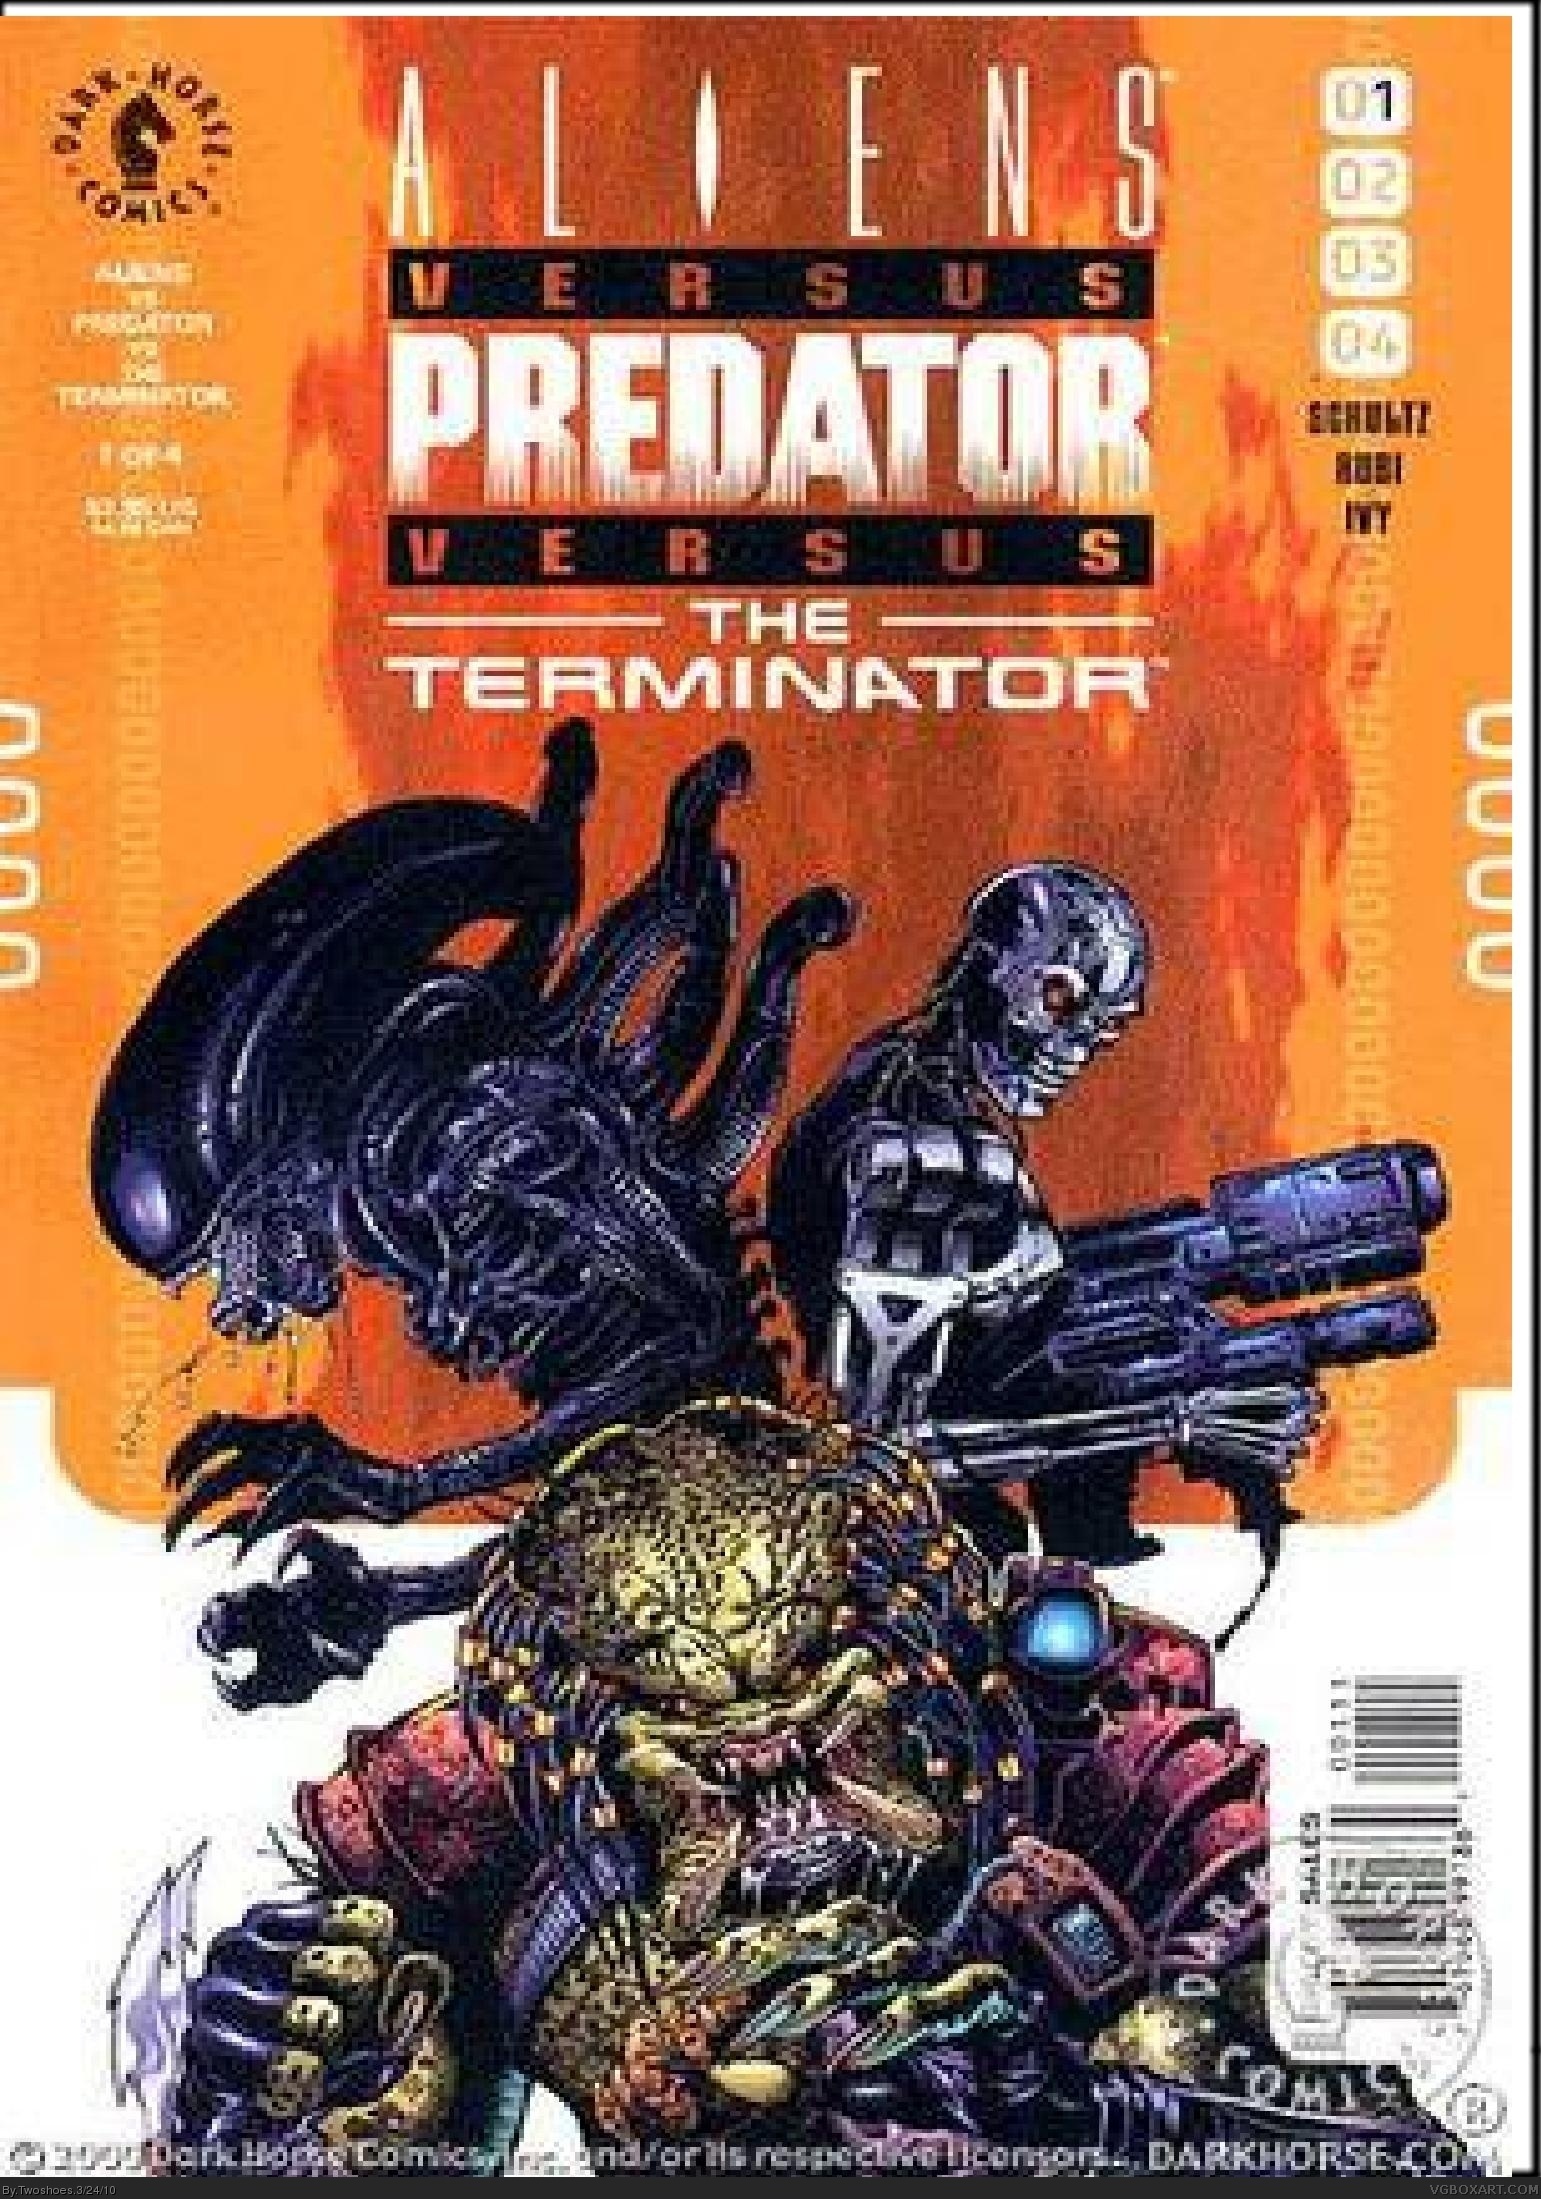 AvPvT: Aliens Vs Predator Vs The Terminator box cover